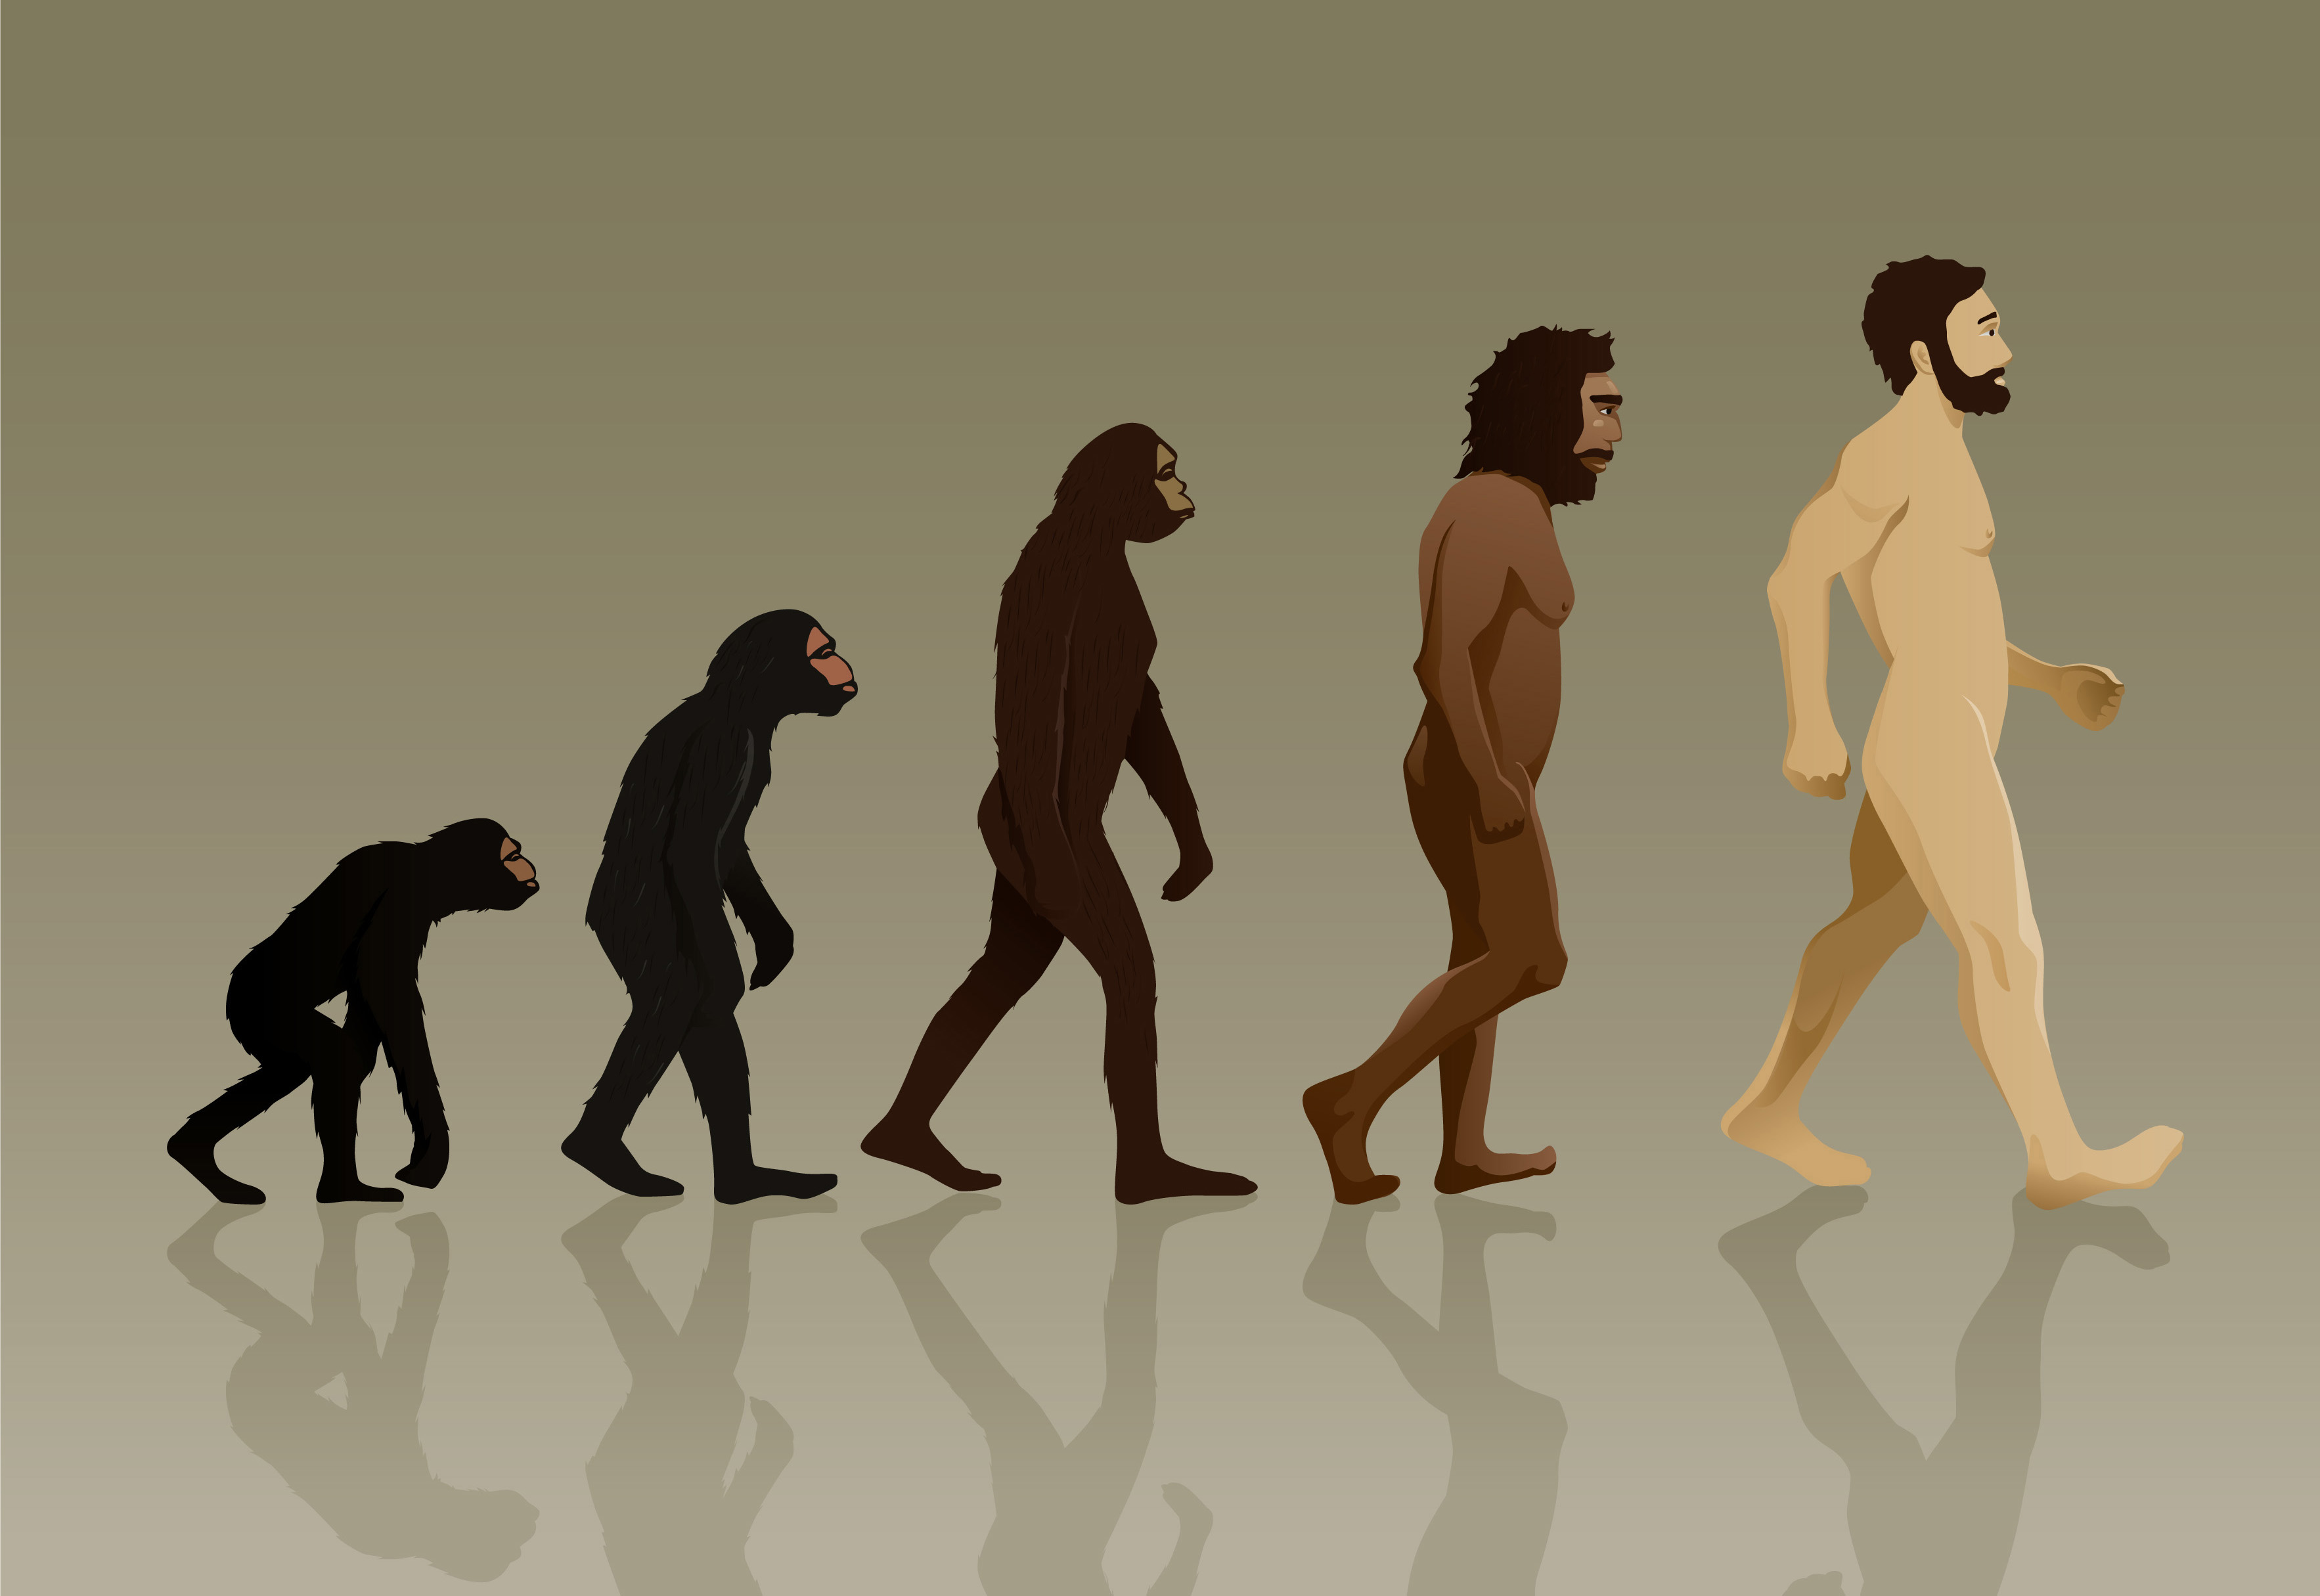 Человек обезьяна название. Эволюция Дарвин хомо. Ступени эволюции человека по Дарвину. Хомо сапиенс обезьяна. Эволюция обезьяны в человека.